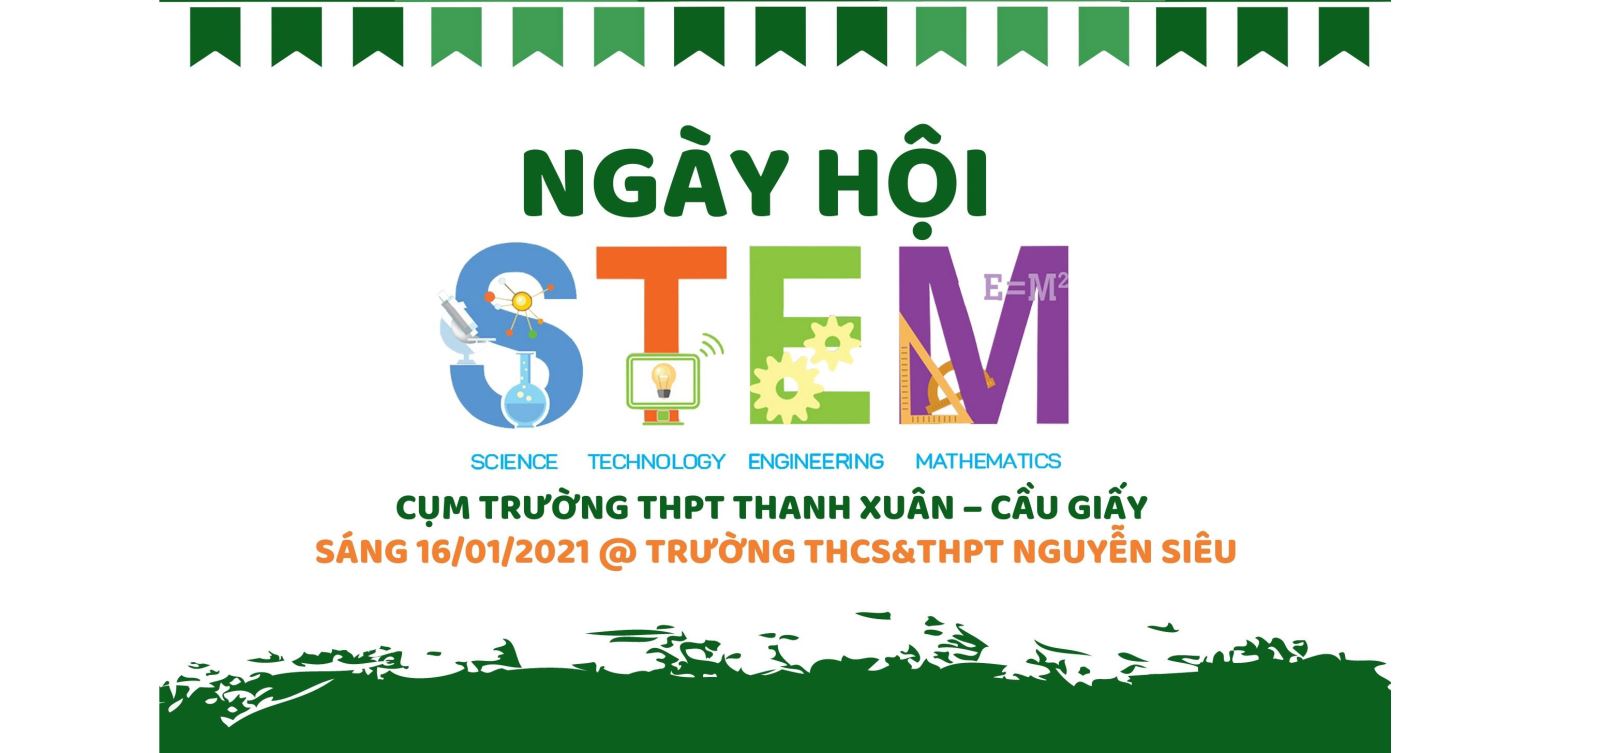 Chào đón Ngày hội STEM lớn tại Trường Nguyễn Siêu